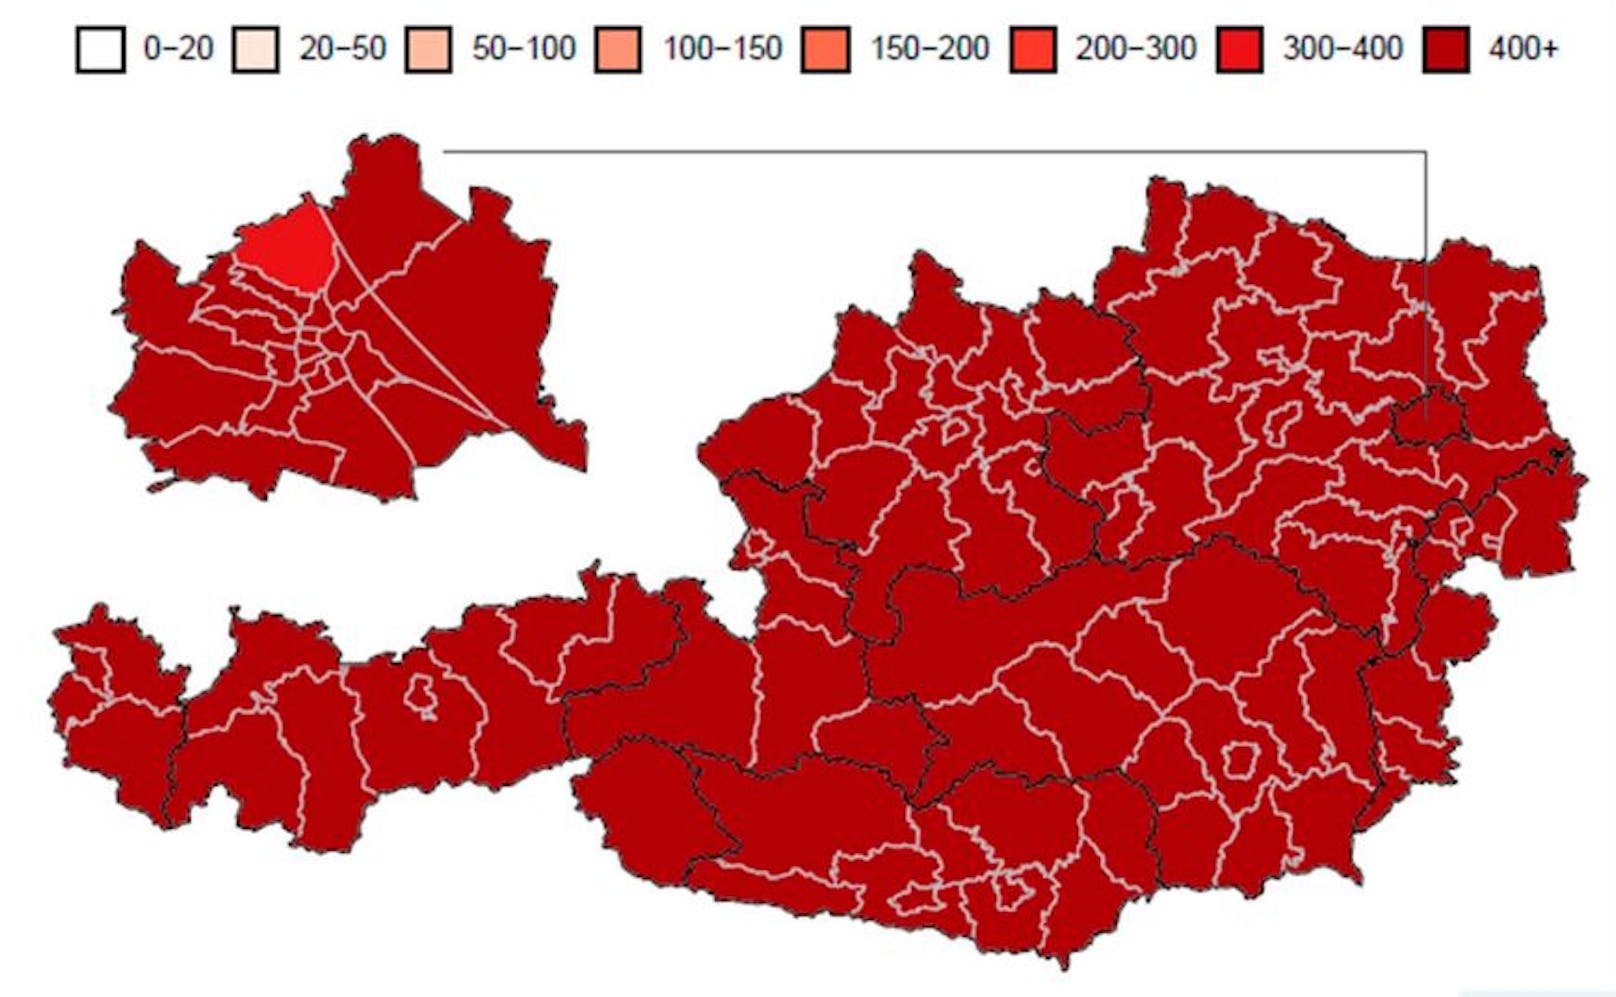 Aktuelle 7-Tages-Inzidenz pro 100.000 Einwohner in Österreichs Bezirken laut AGES-Analyse.